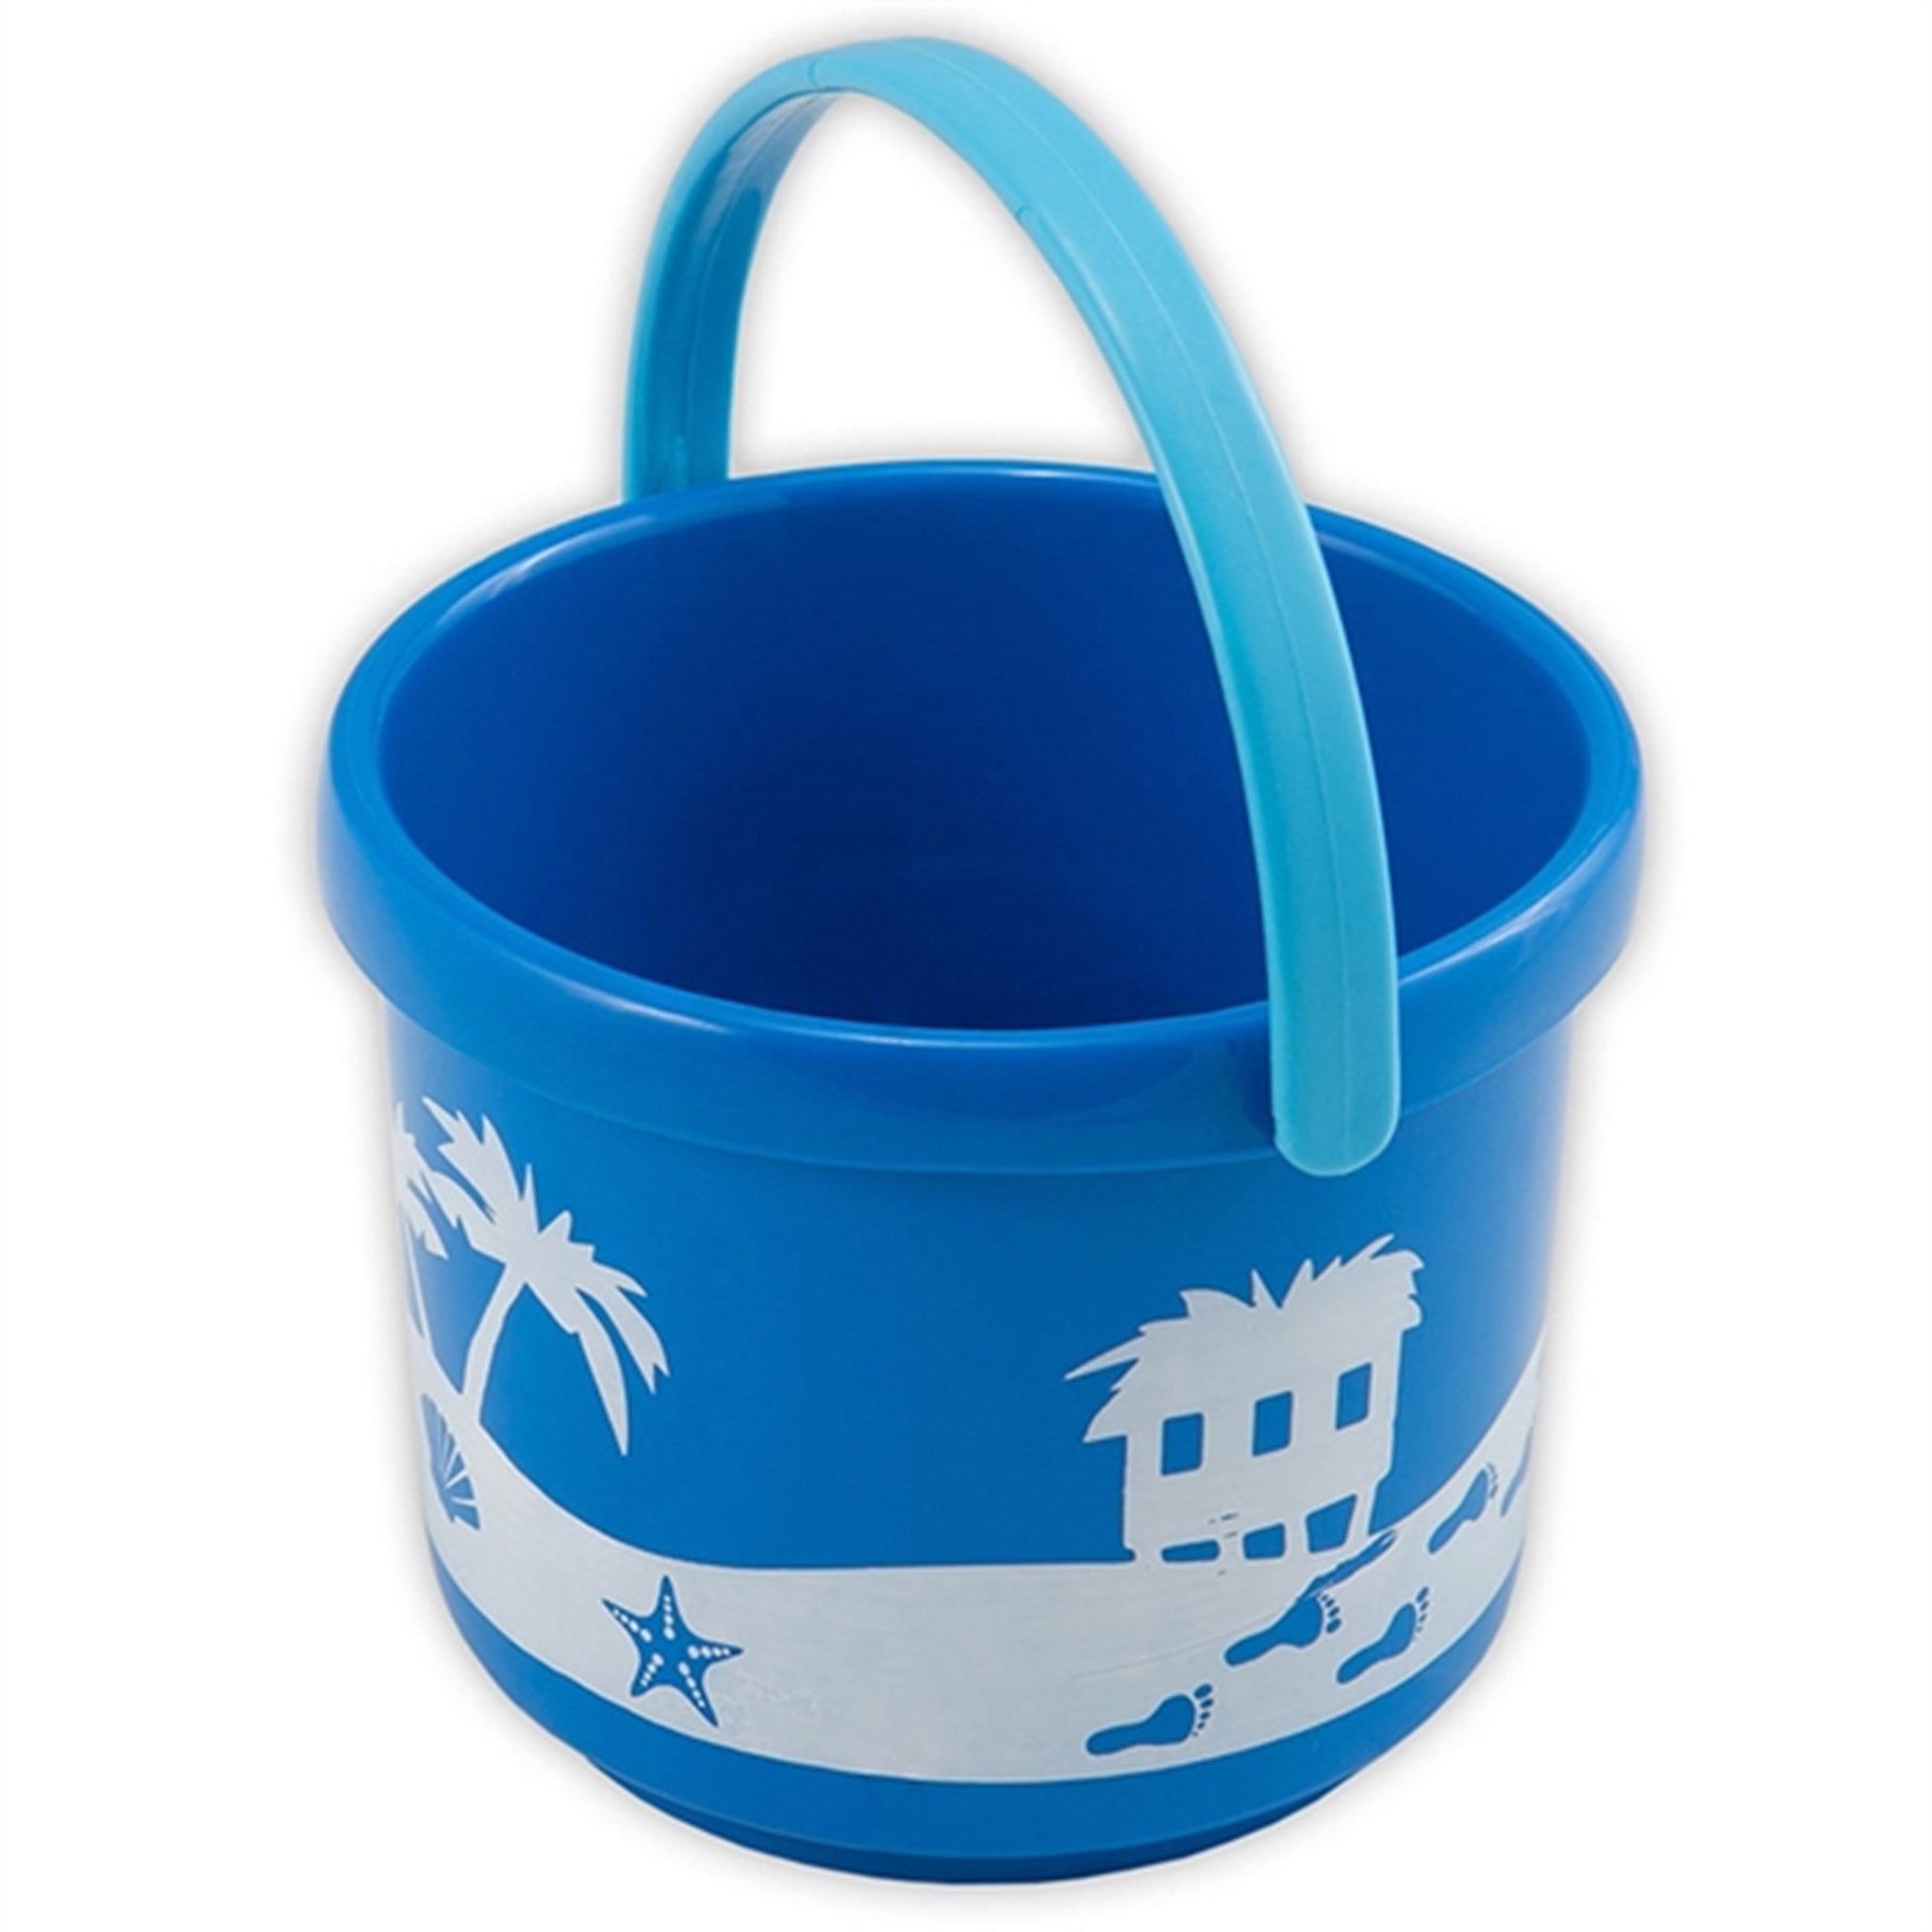 Spielstabil Small Bucket Pirate - Blue